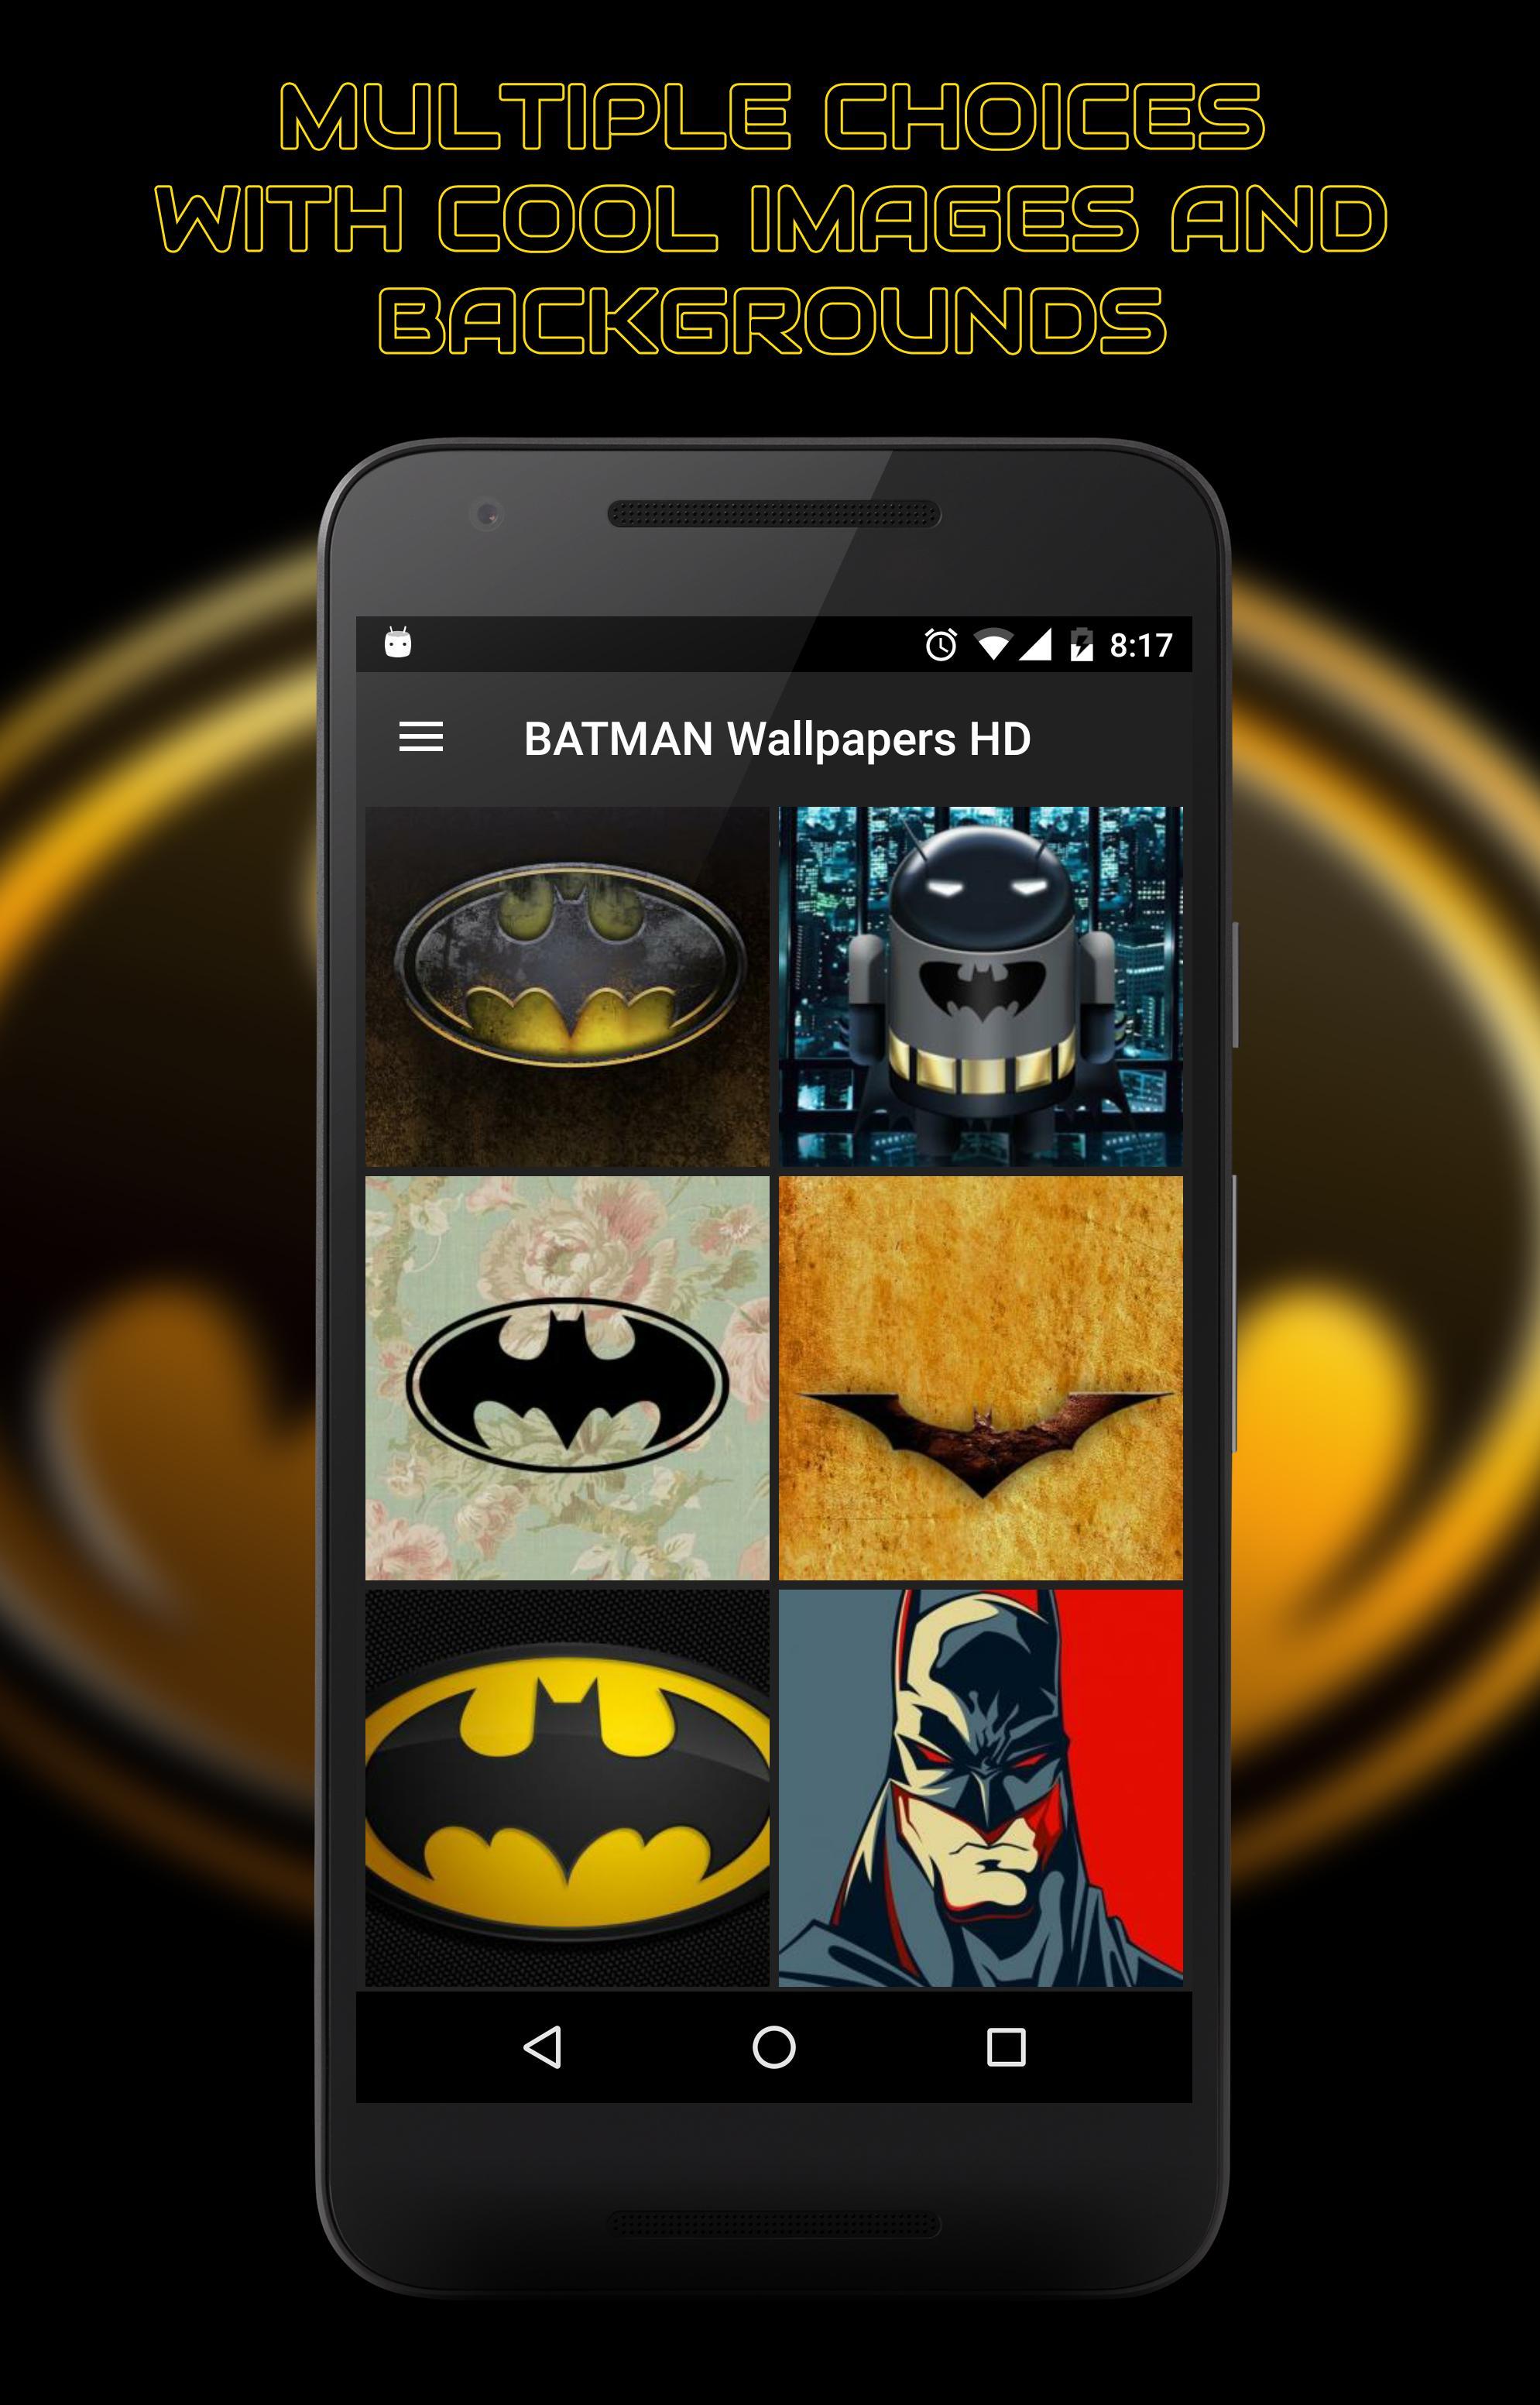 Fondos De Pantalla Batman For Android Apk Download